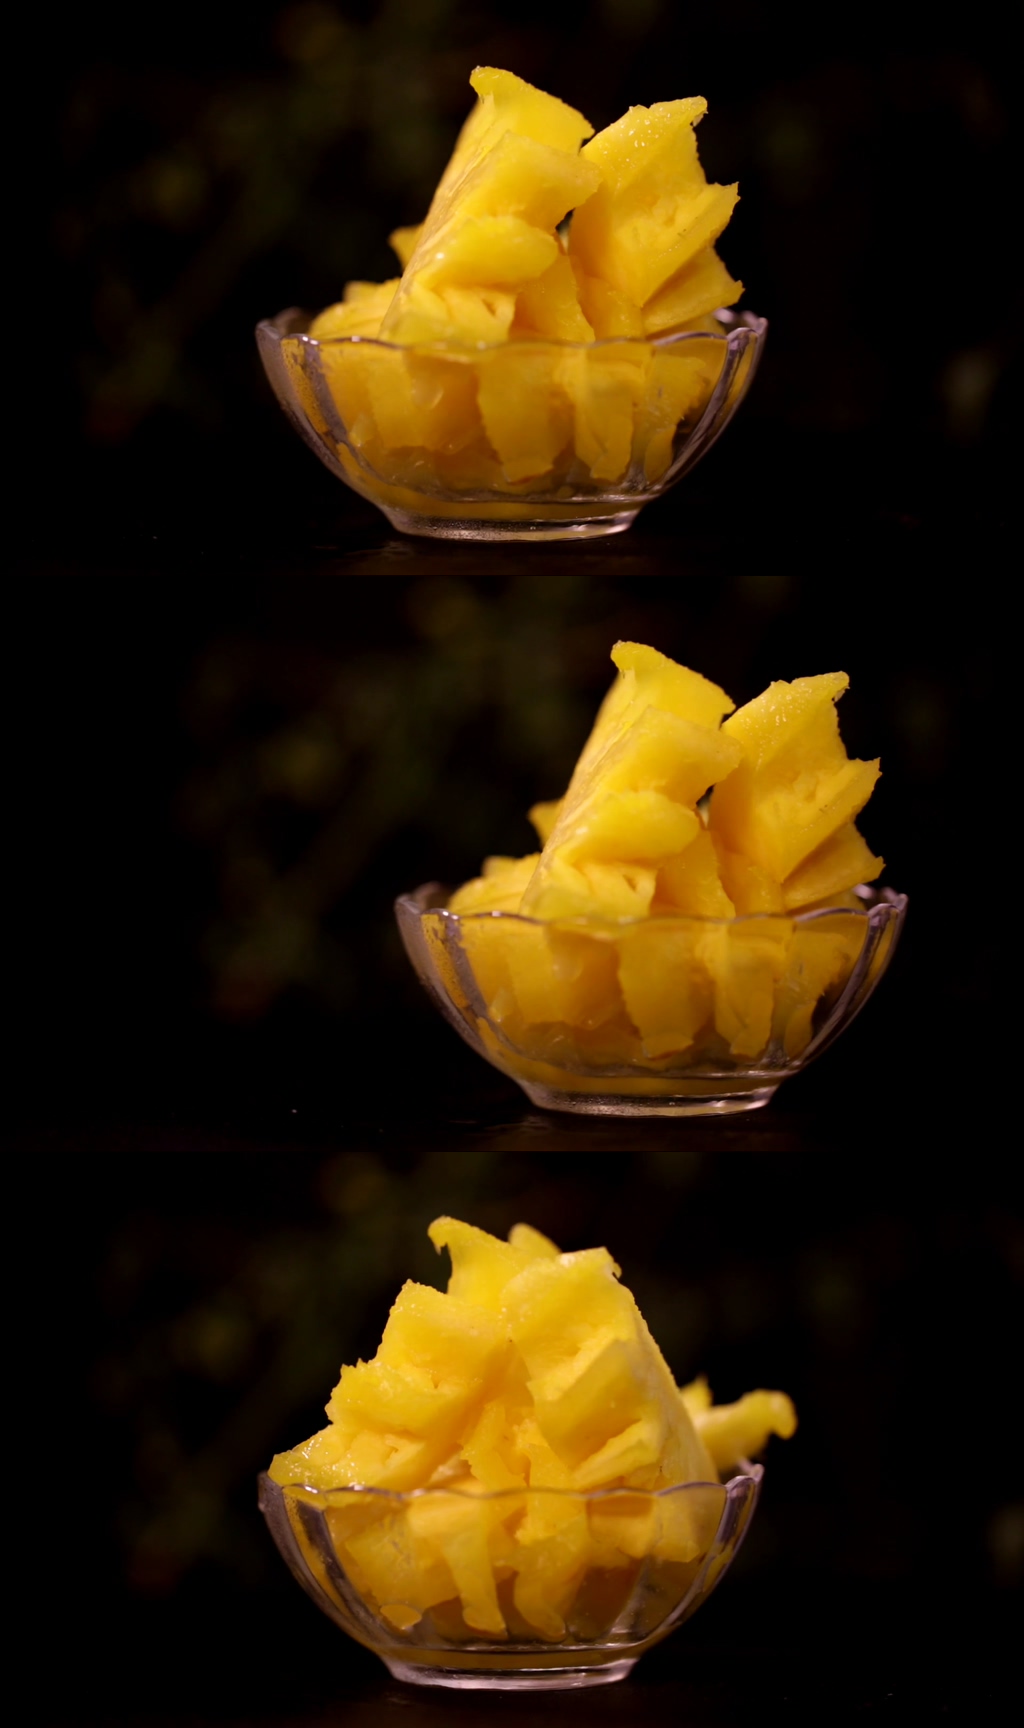 菠萝 水果 户外图片下载 - 觅知网